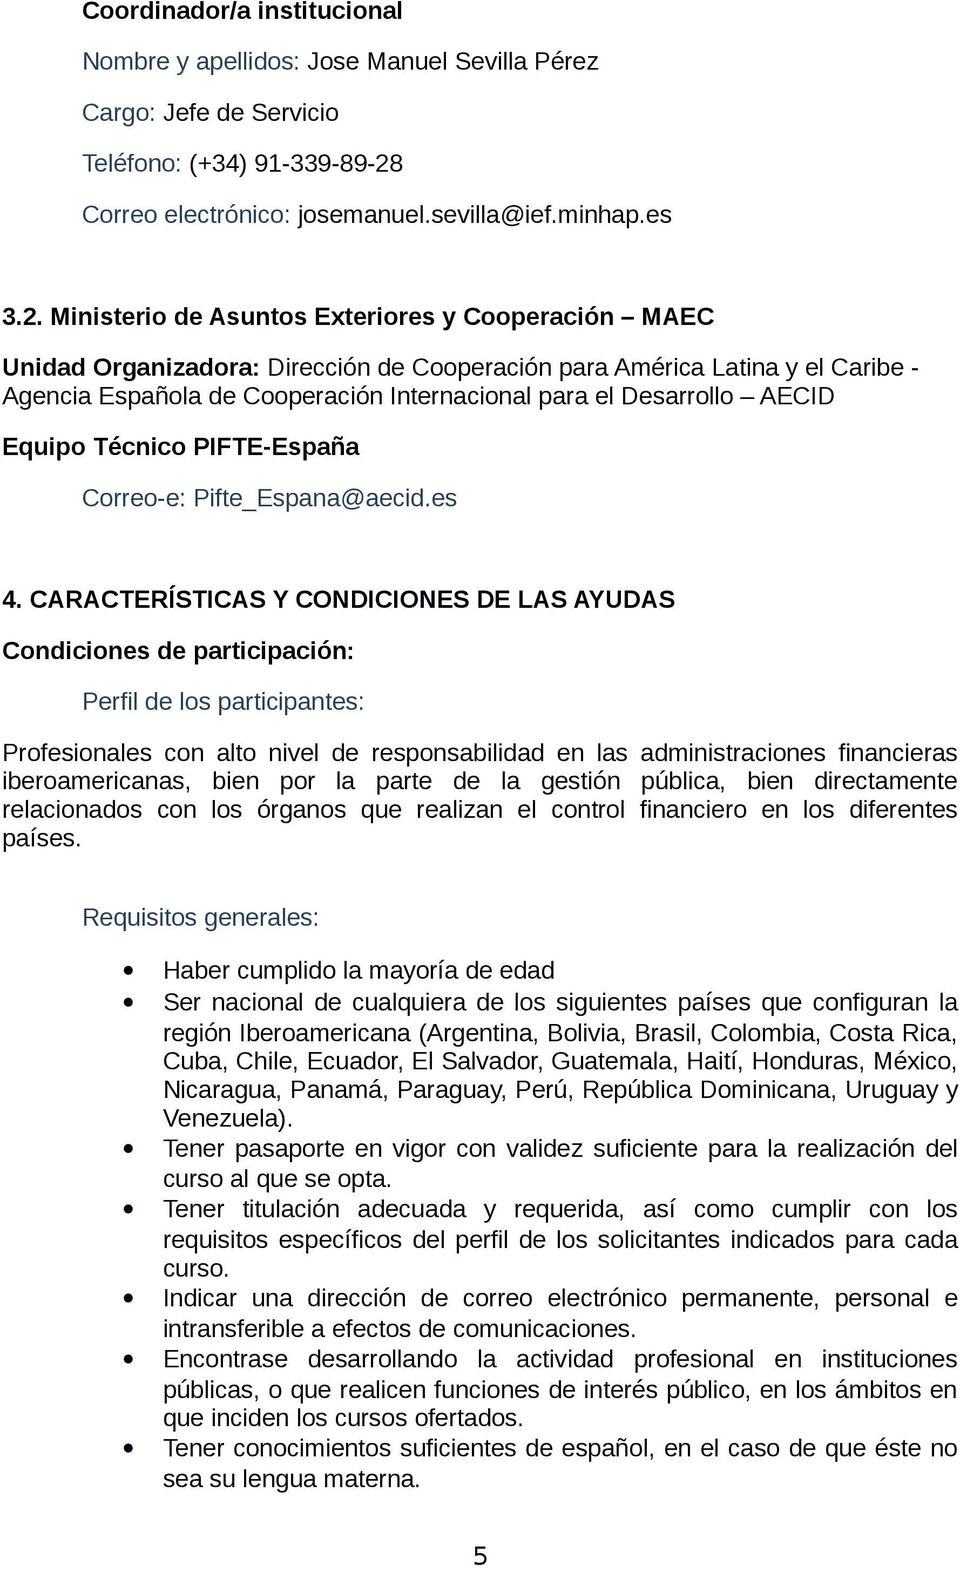 Ministerio de Asuntos Exteriores y Cooperación MAEC Unidad Organizadora: Dirección de Cooperación para América Latina y el Caribe - Agencia Española de Cooperación Internacional para el Desarrollo